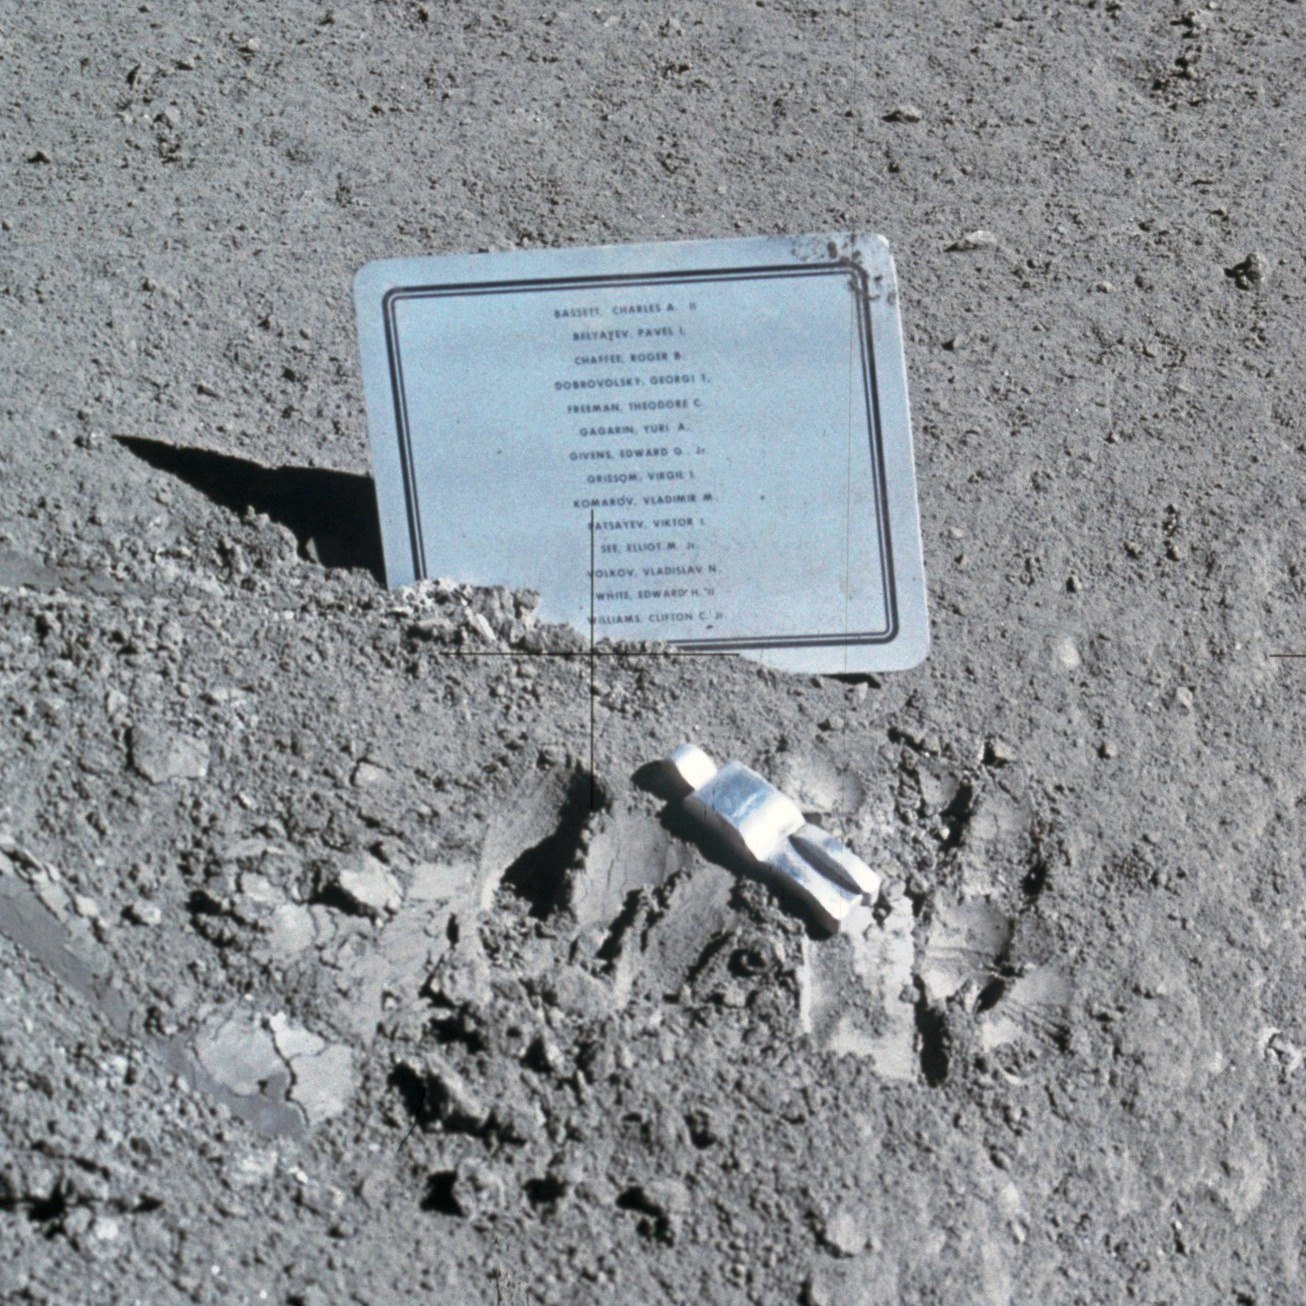 Табличка с именами погибших астронавтов и космонавтов (включая Комарова), оставленная командой «Аполлона-15» на Луне